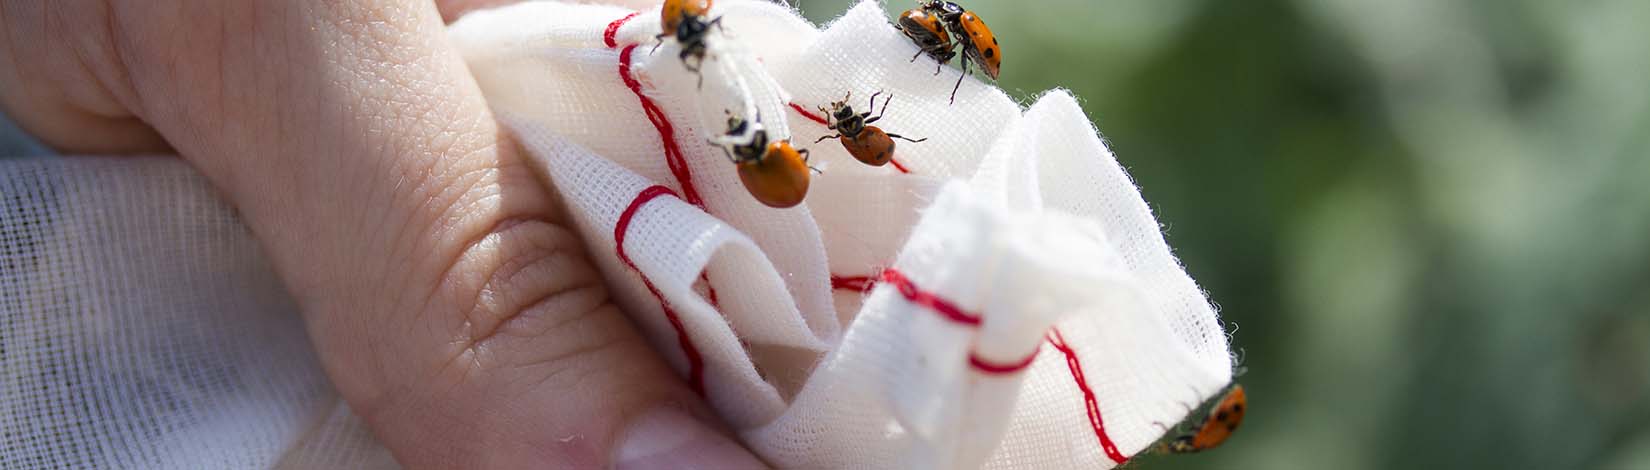 Hand holding ladybugs in Florida